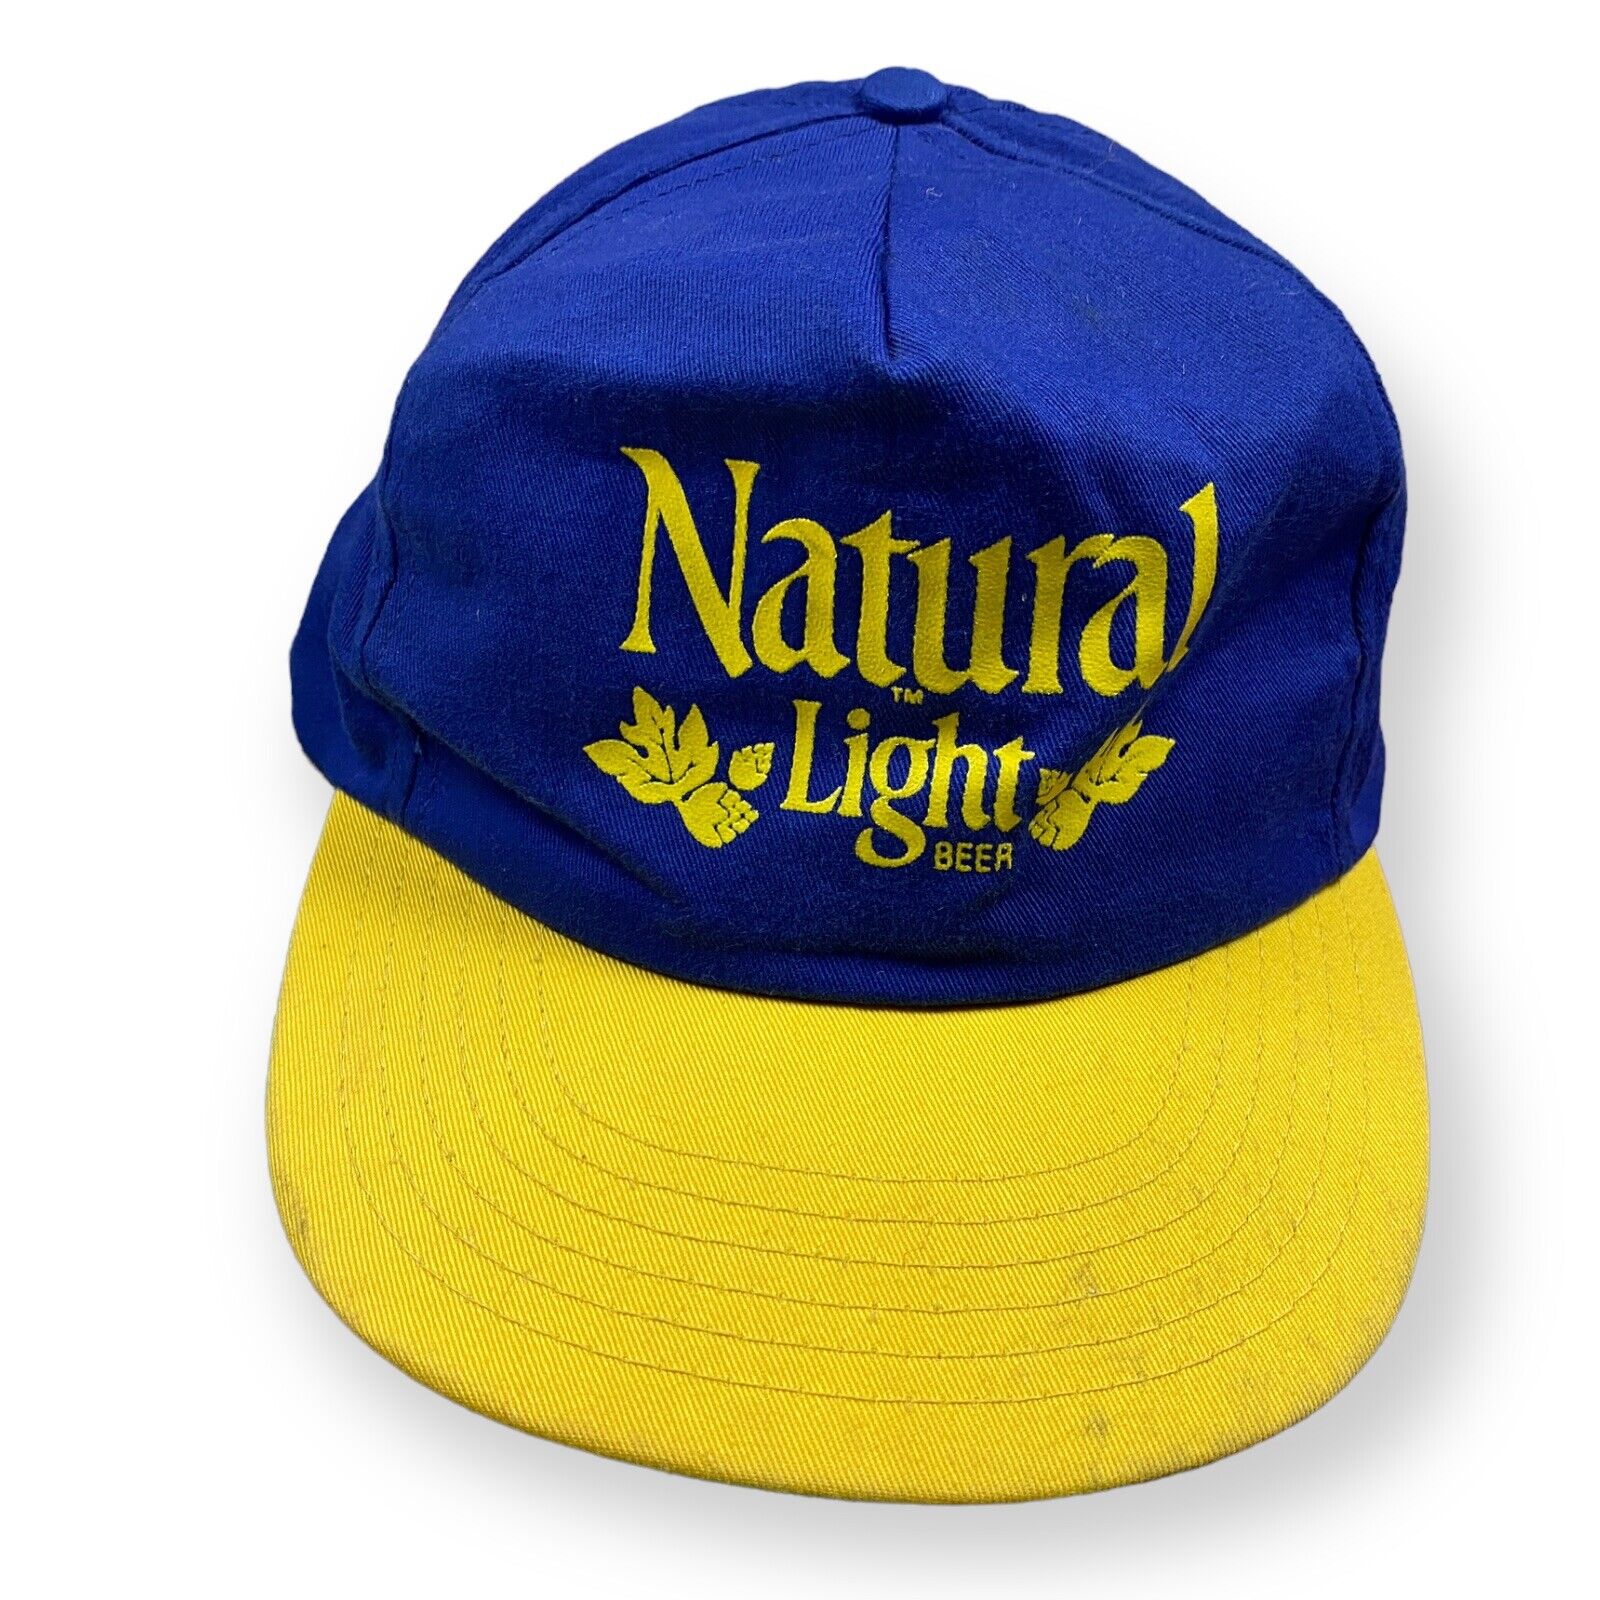 Vtg 90s NATURAL Natty LIGHT BEER Trucker SnapBack… - image 1